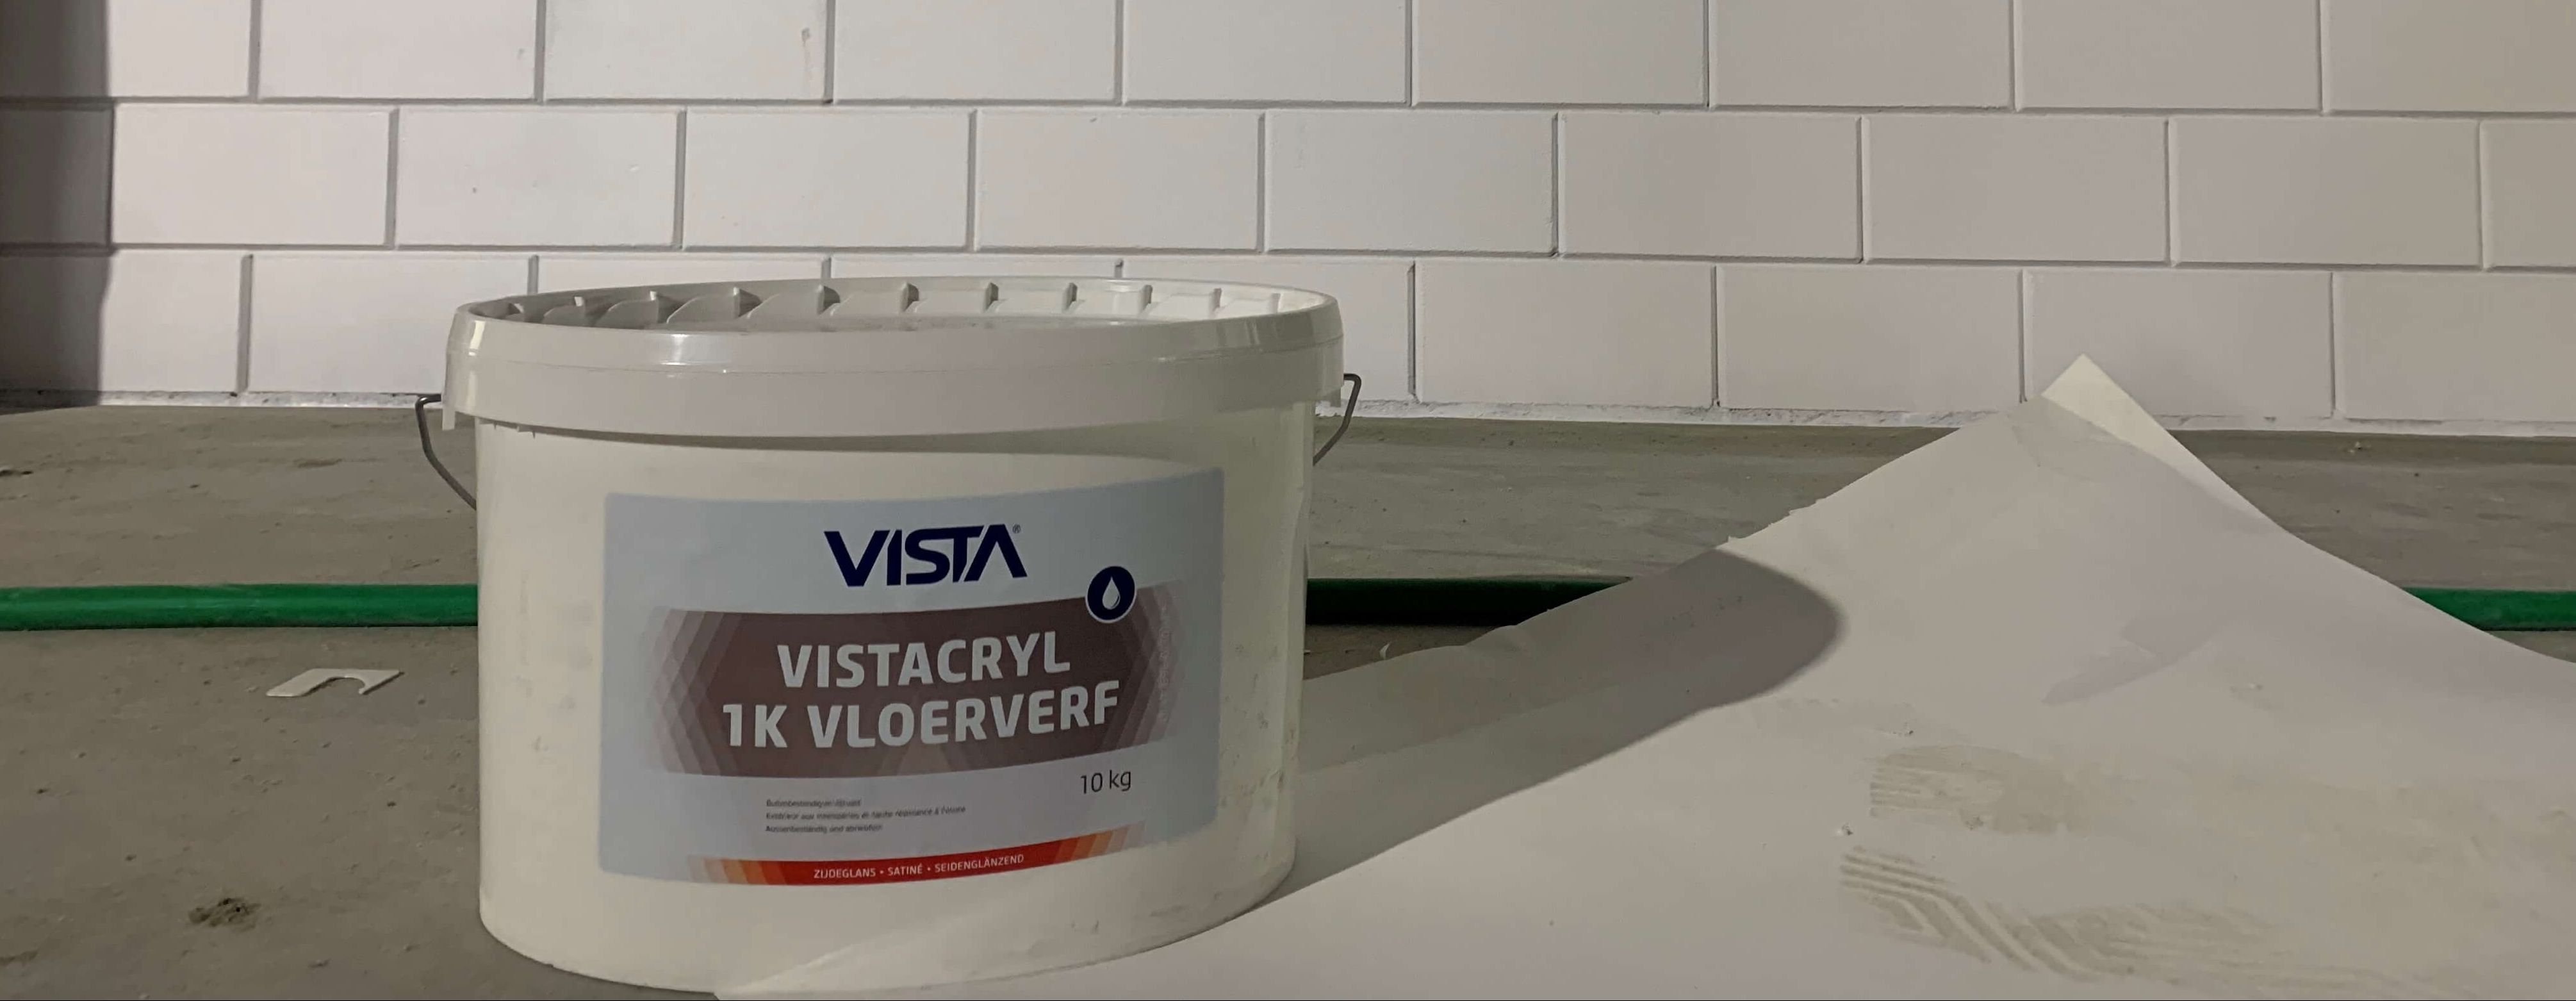 Vistacryl 1K Vloerverf op de nieuwe kluizen